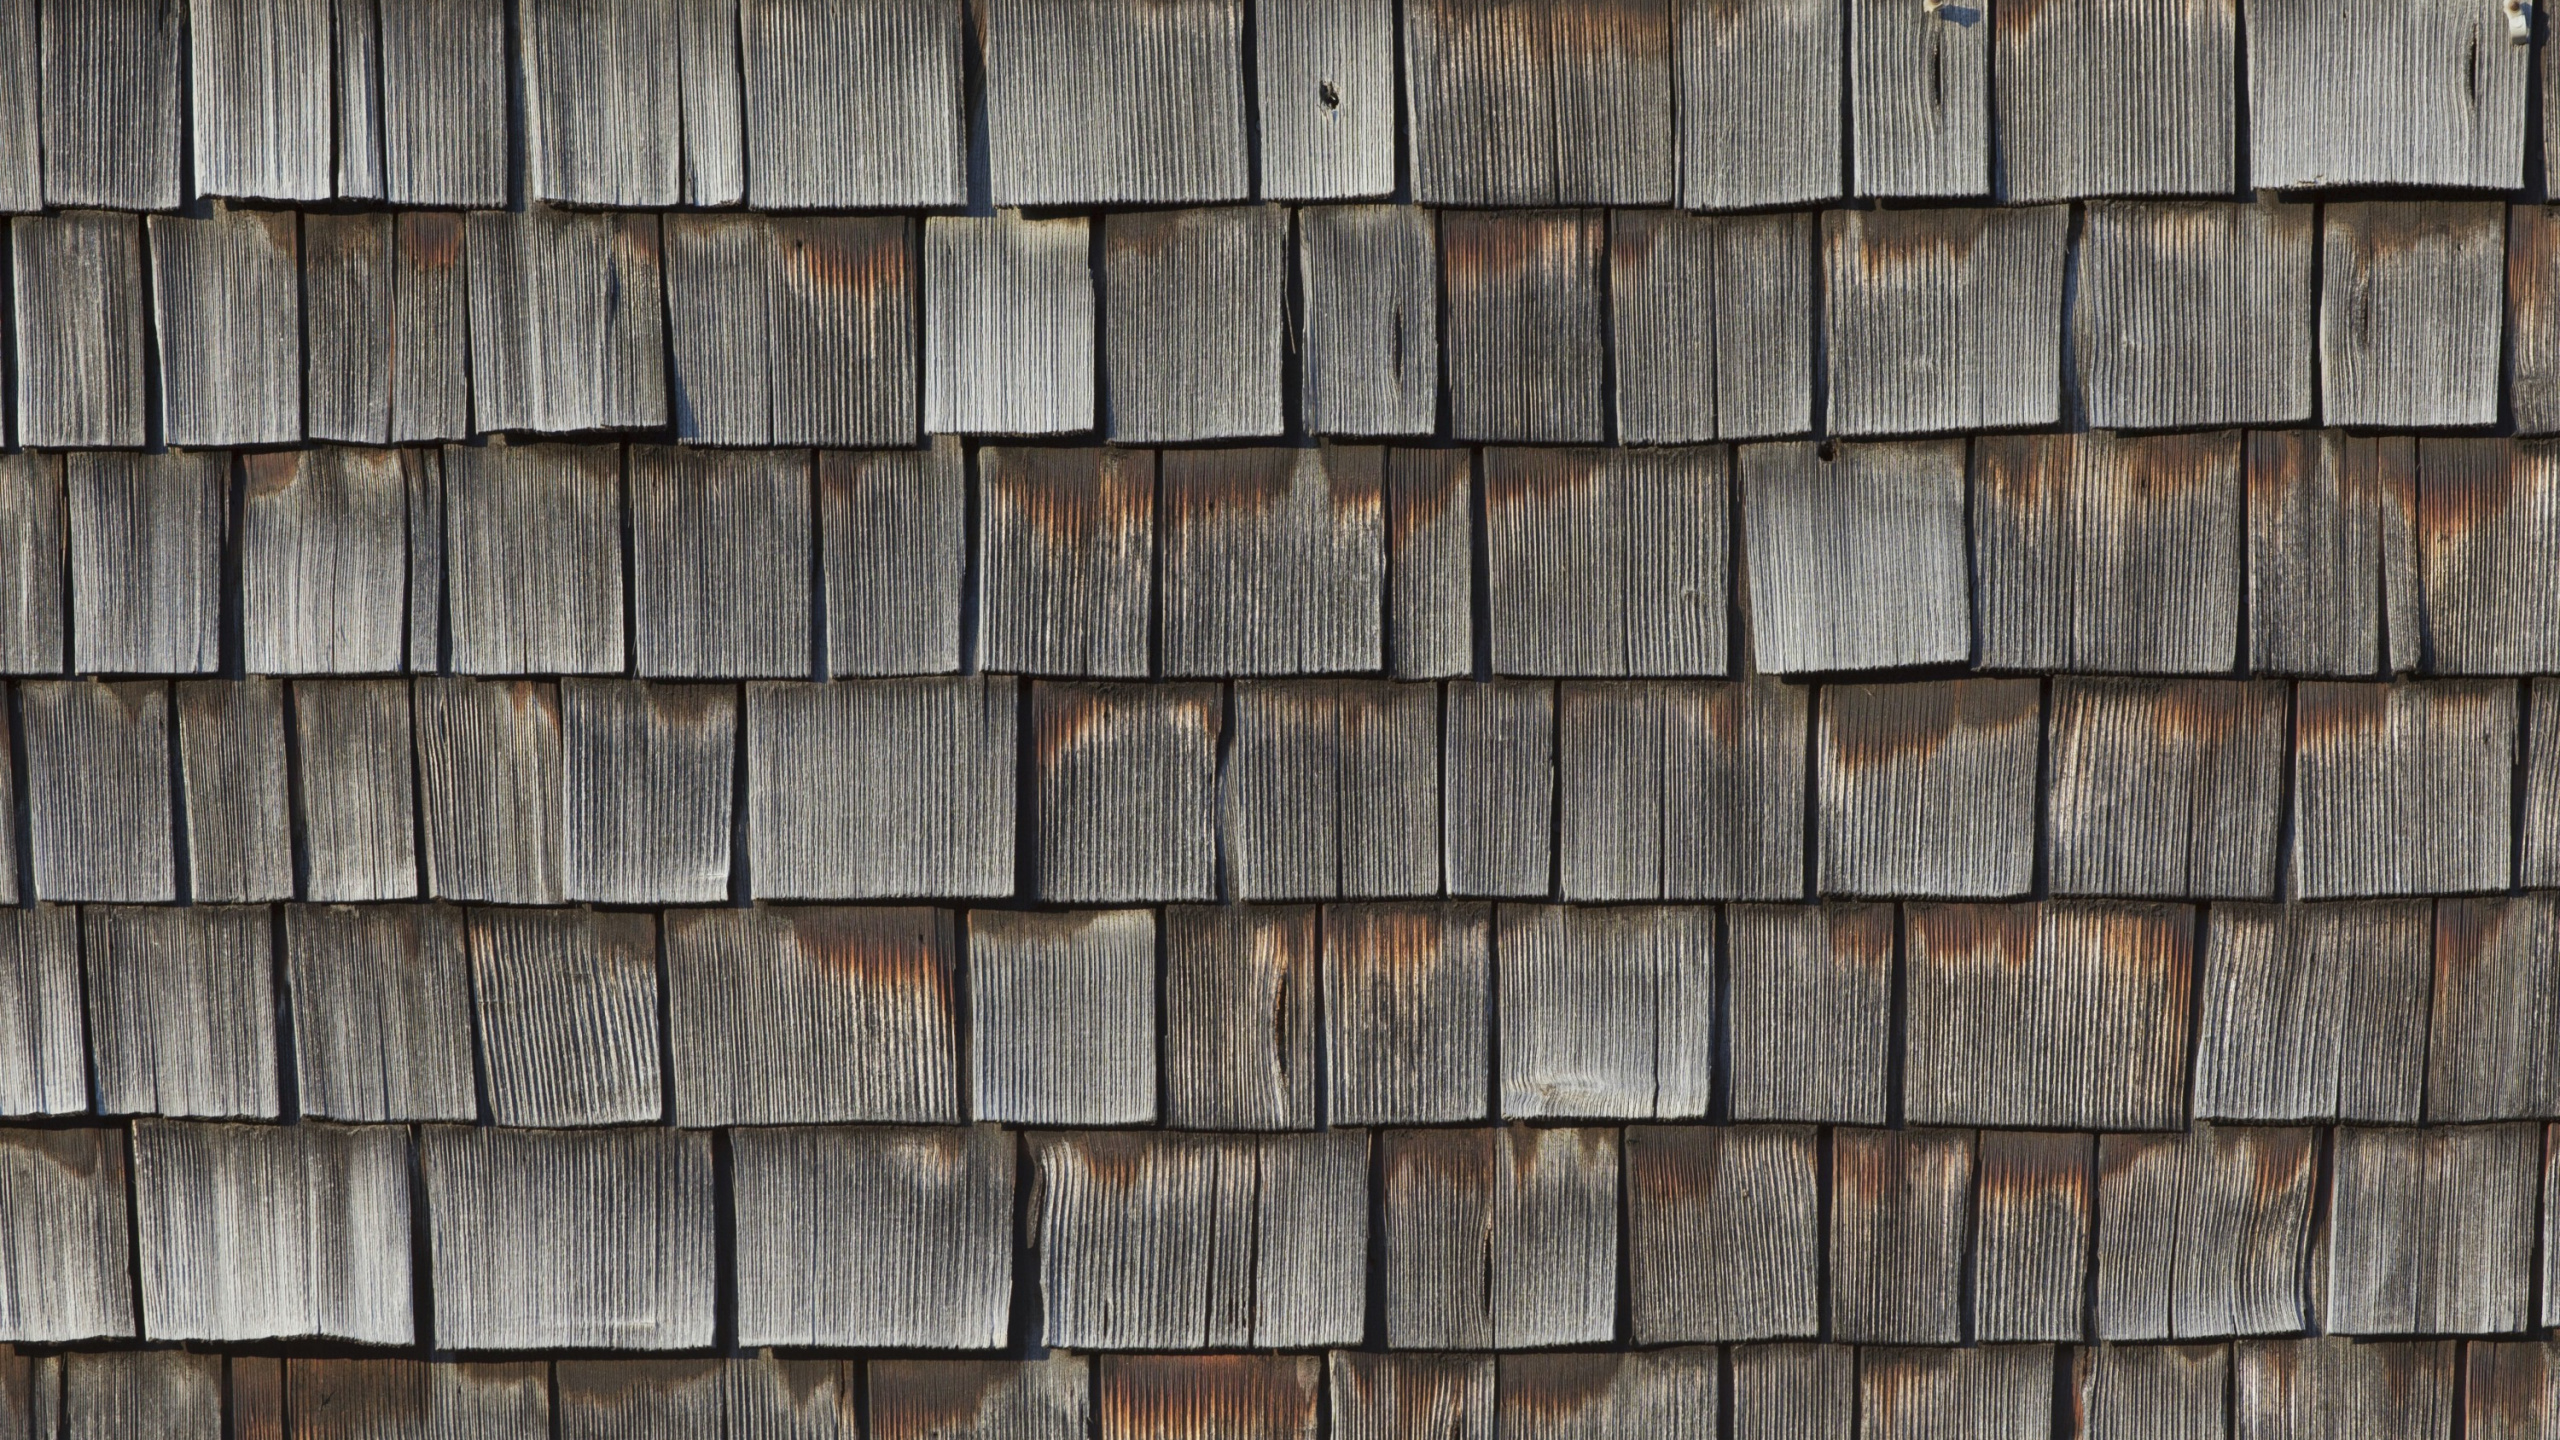 石壁, 木染色, 木, 木材, 木板 壁纸 2560x1440 允许